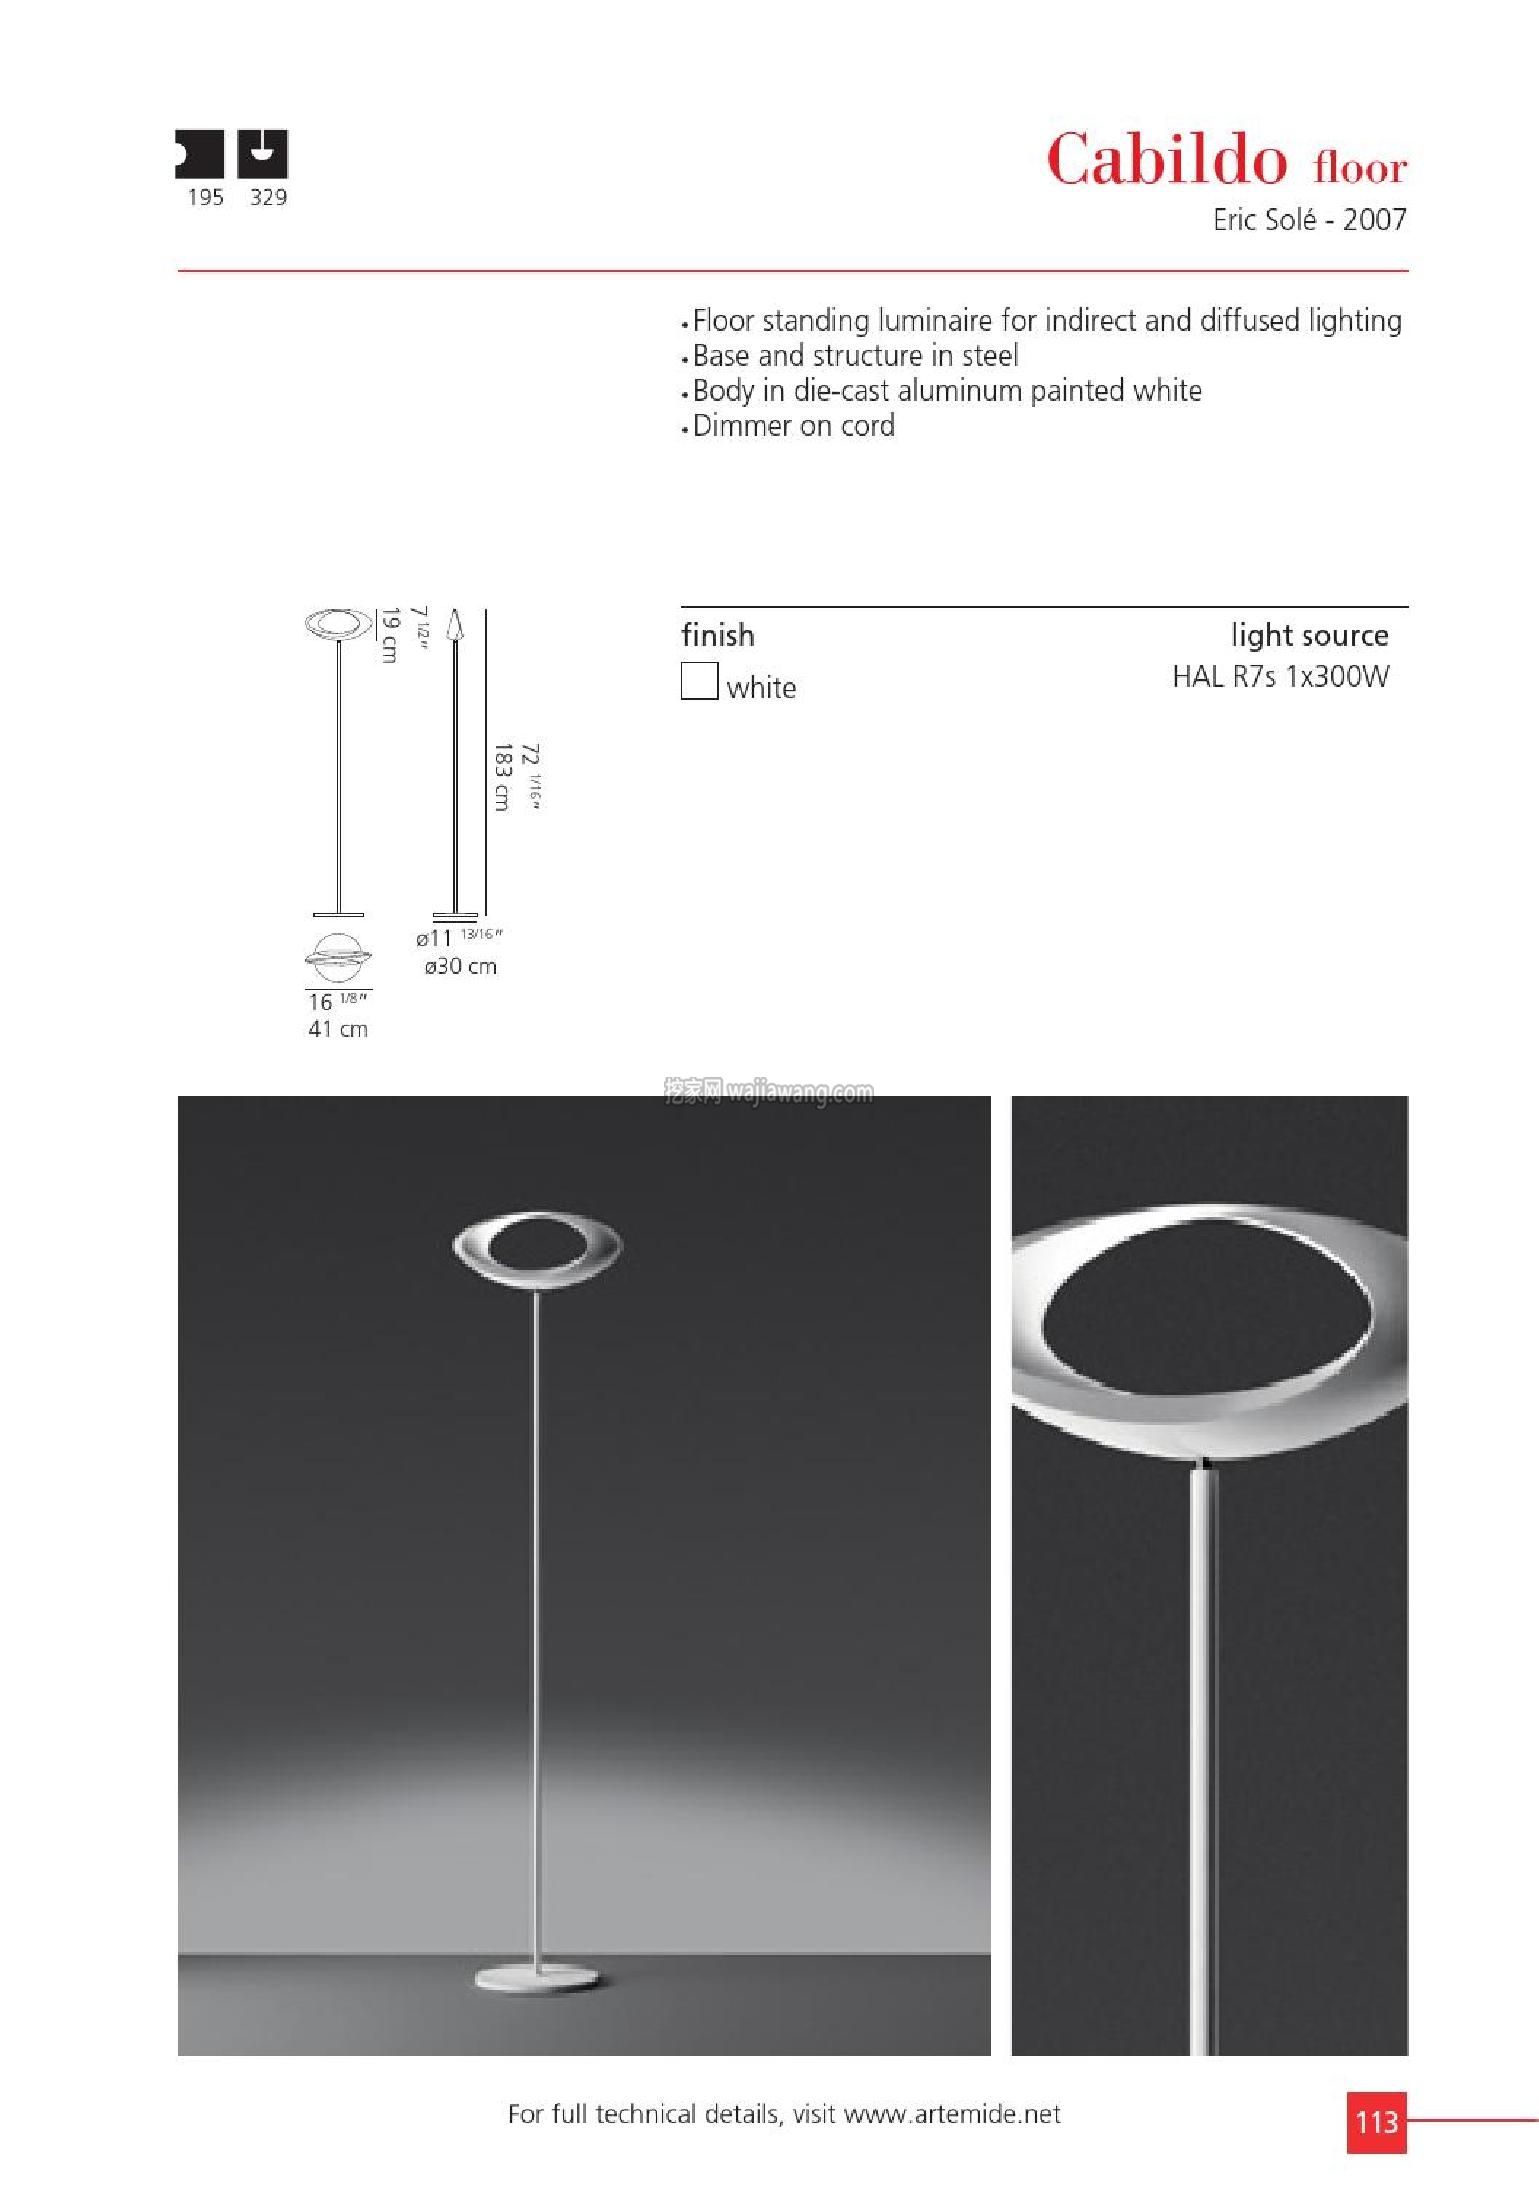 灯饰设计 2015年简约创意灯饰设计 Artemide(图)